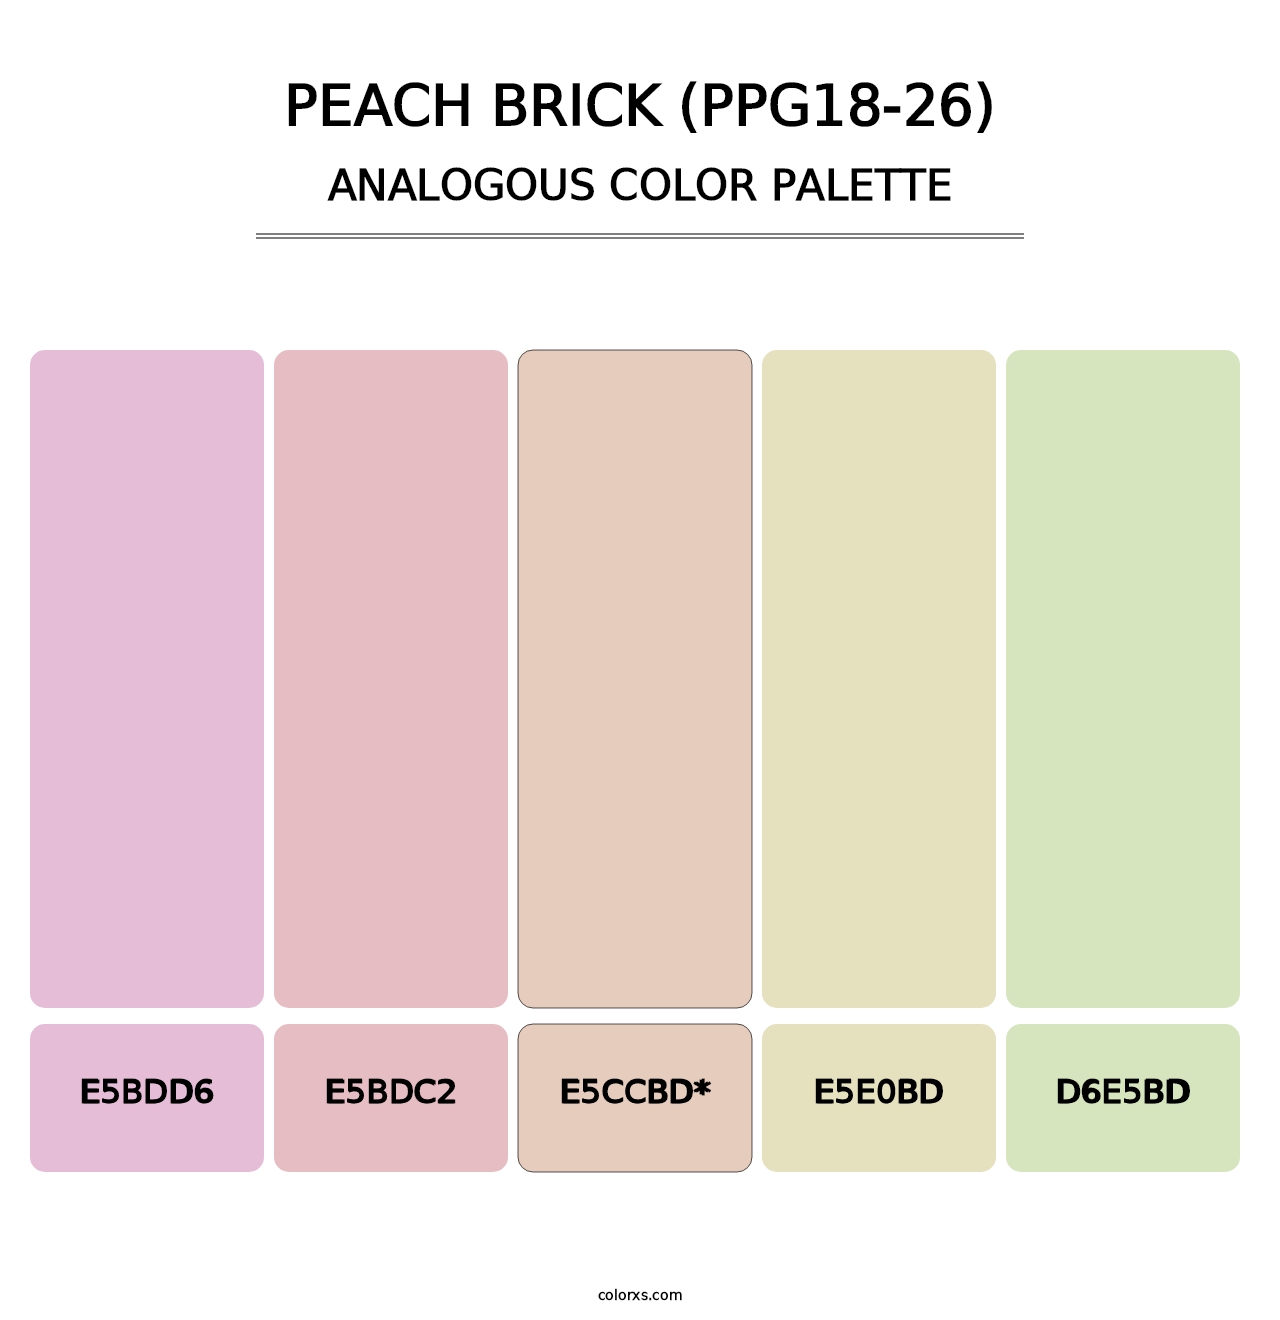 Peach Brick (PPG18-26) - Analogous Color Palette